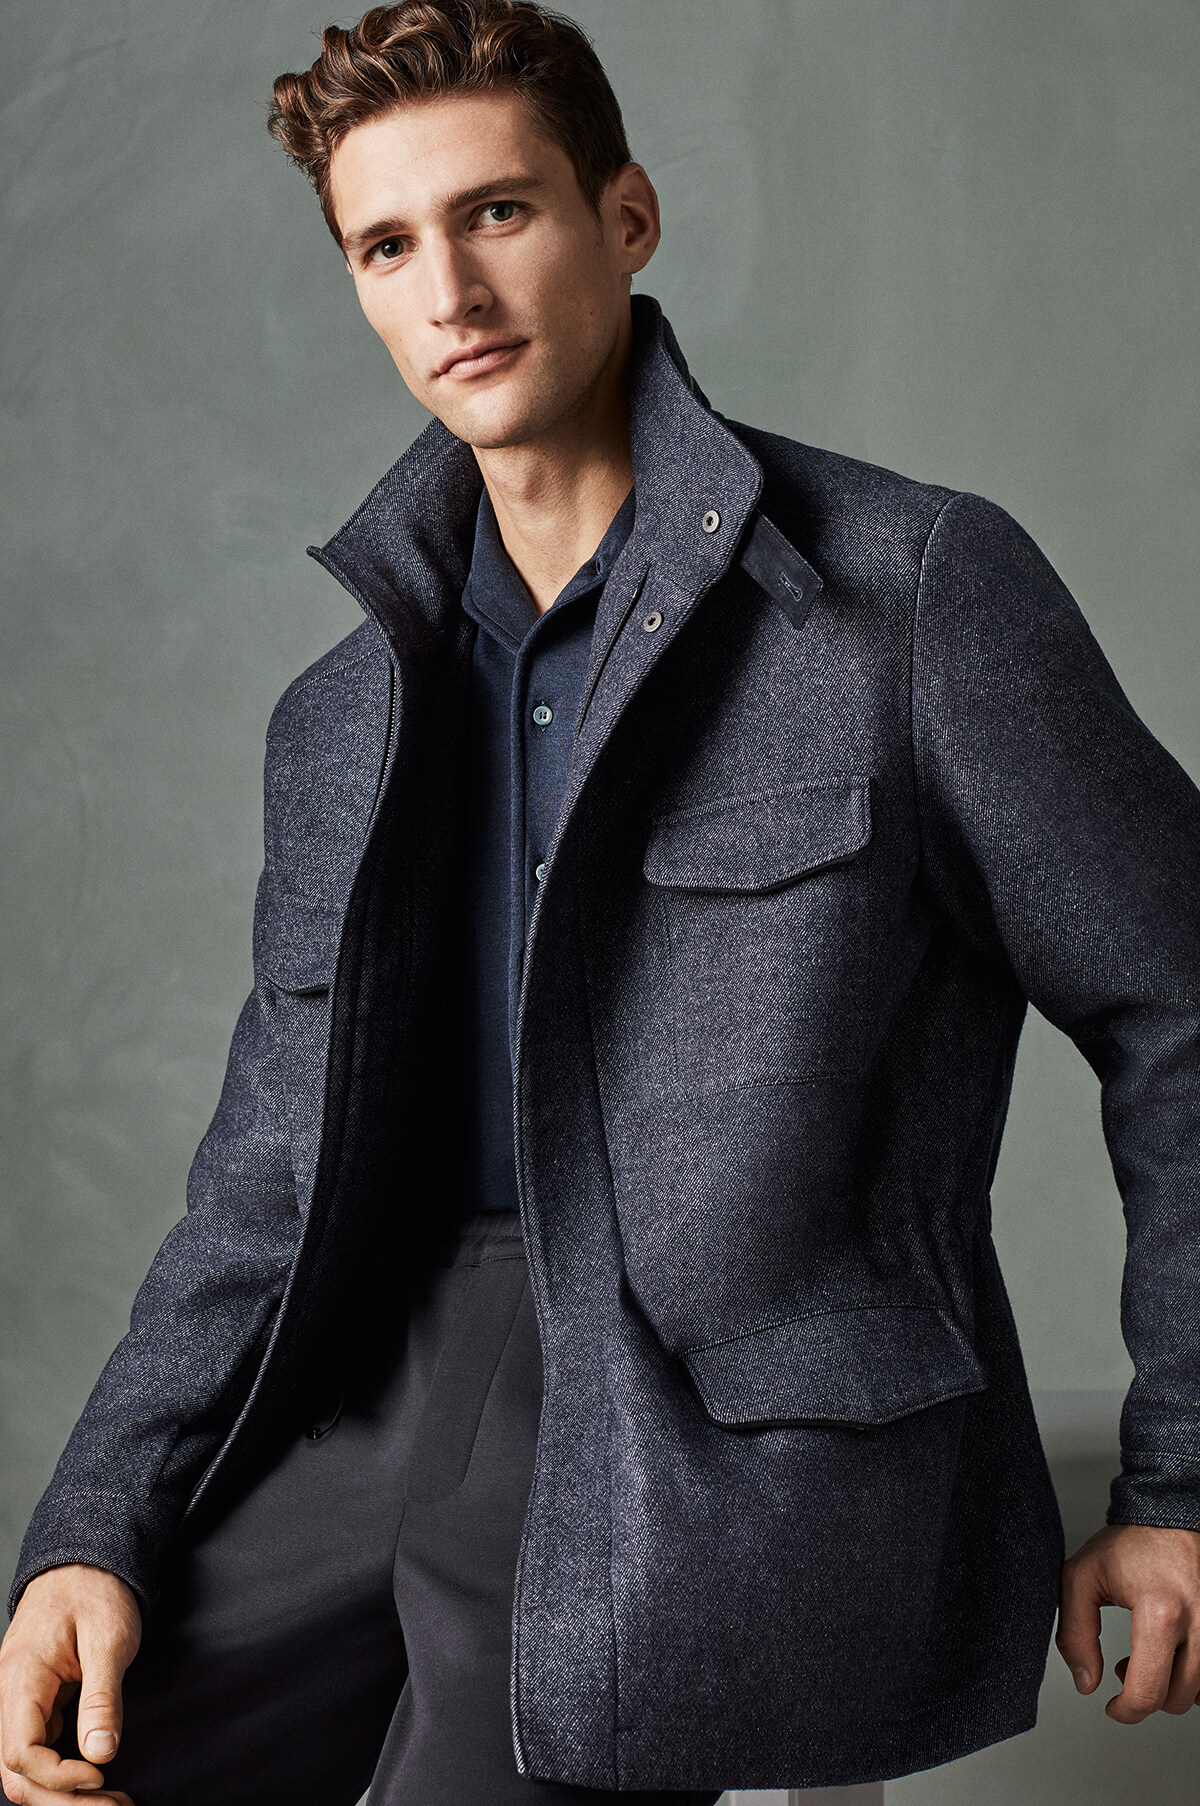 英國藍格紋羊毛Traveller企領外套結合休閒、經典與功能美三大特質，配上深藍